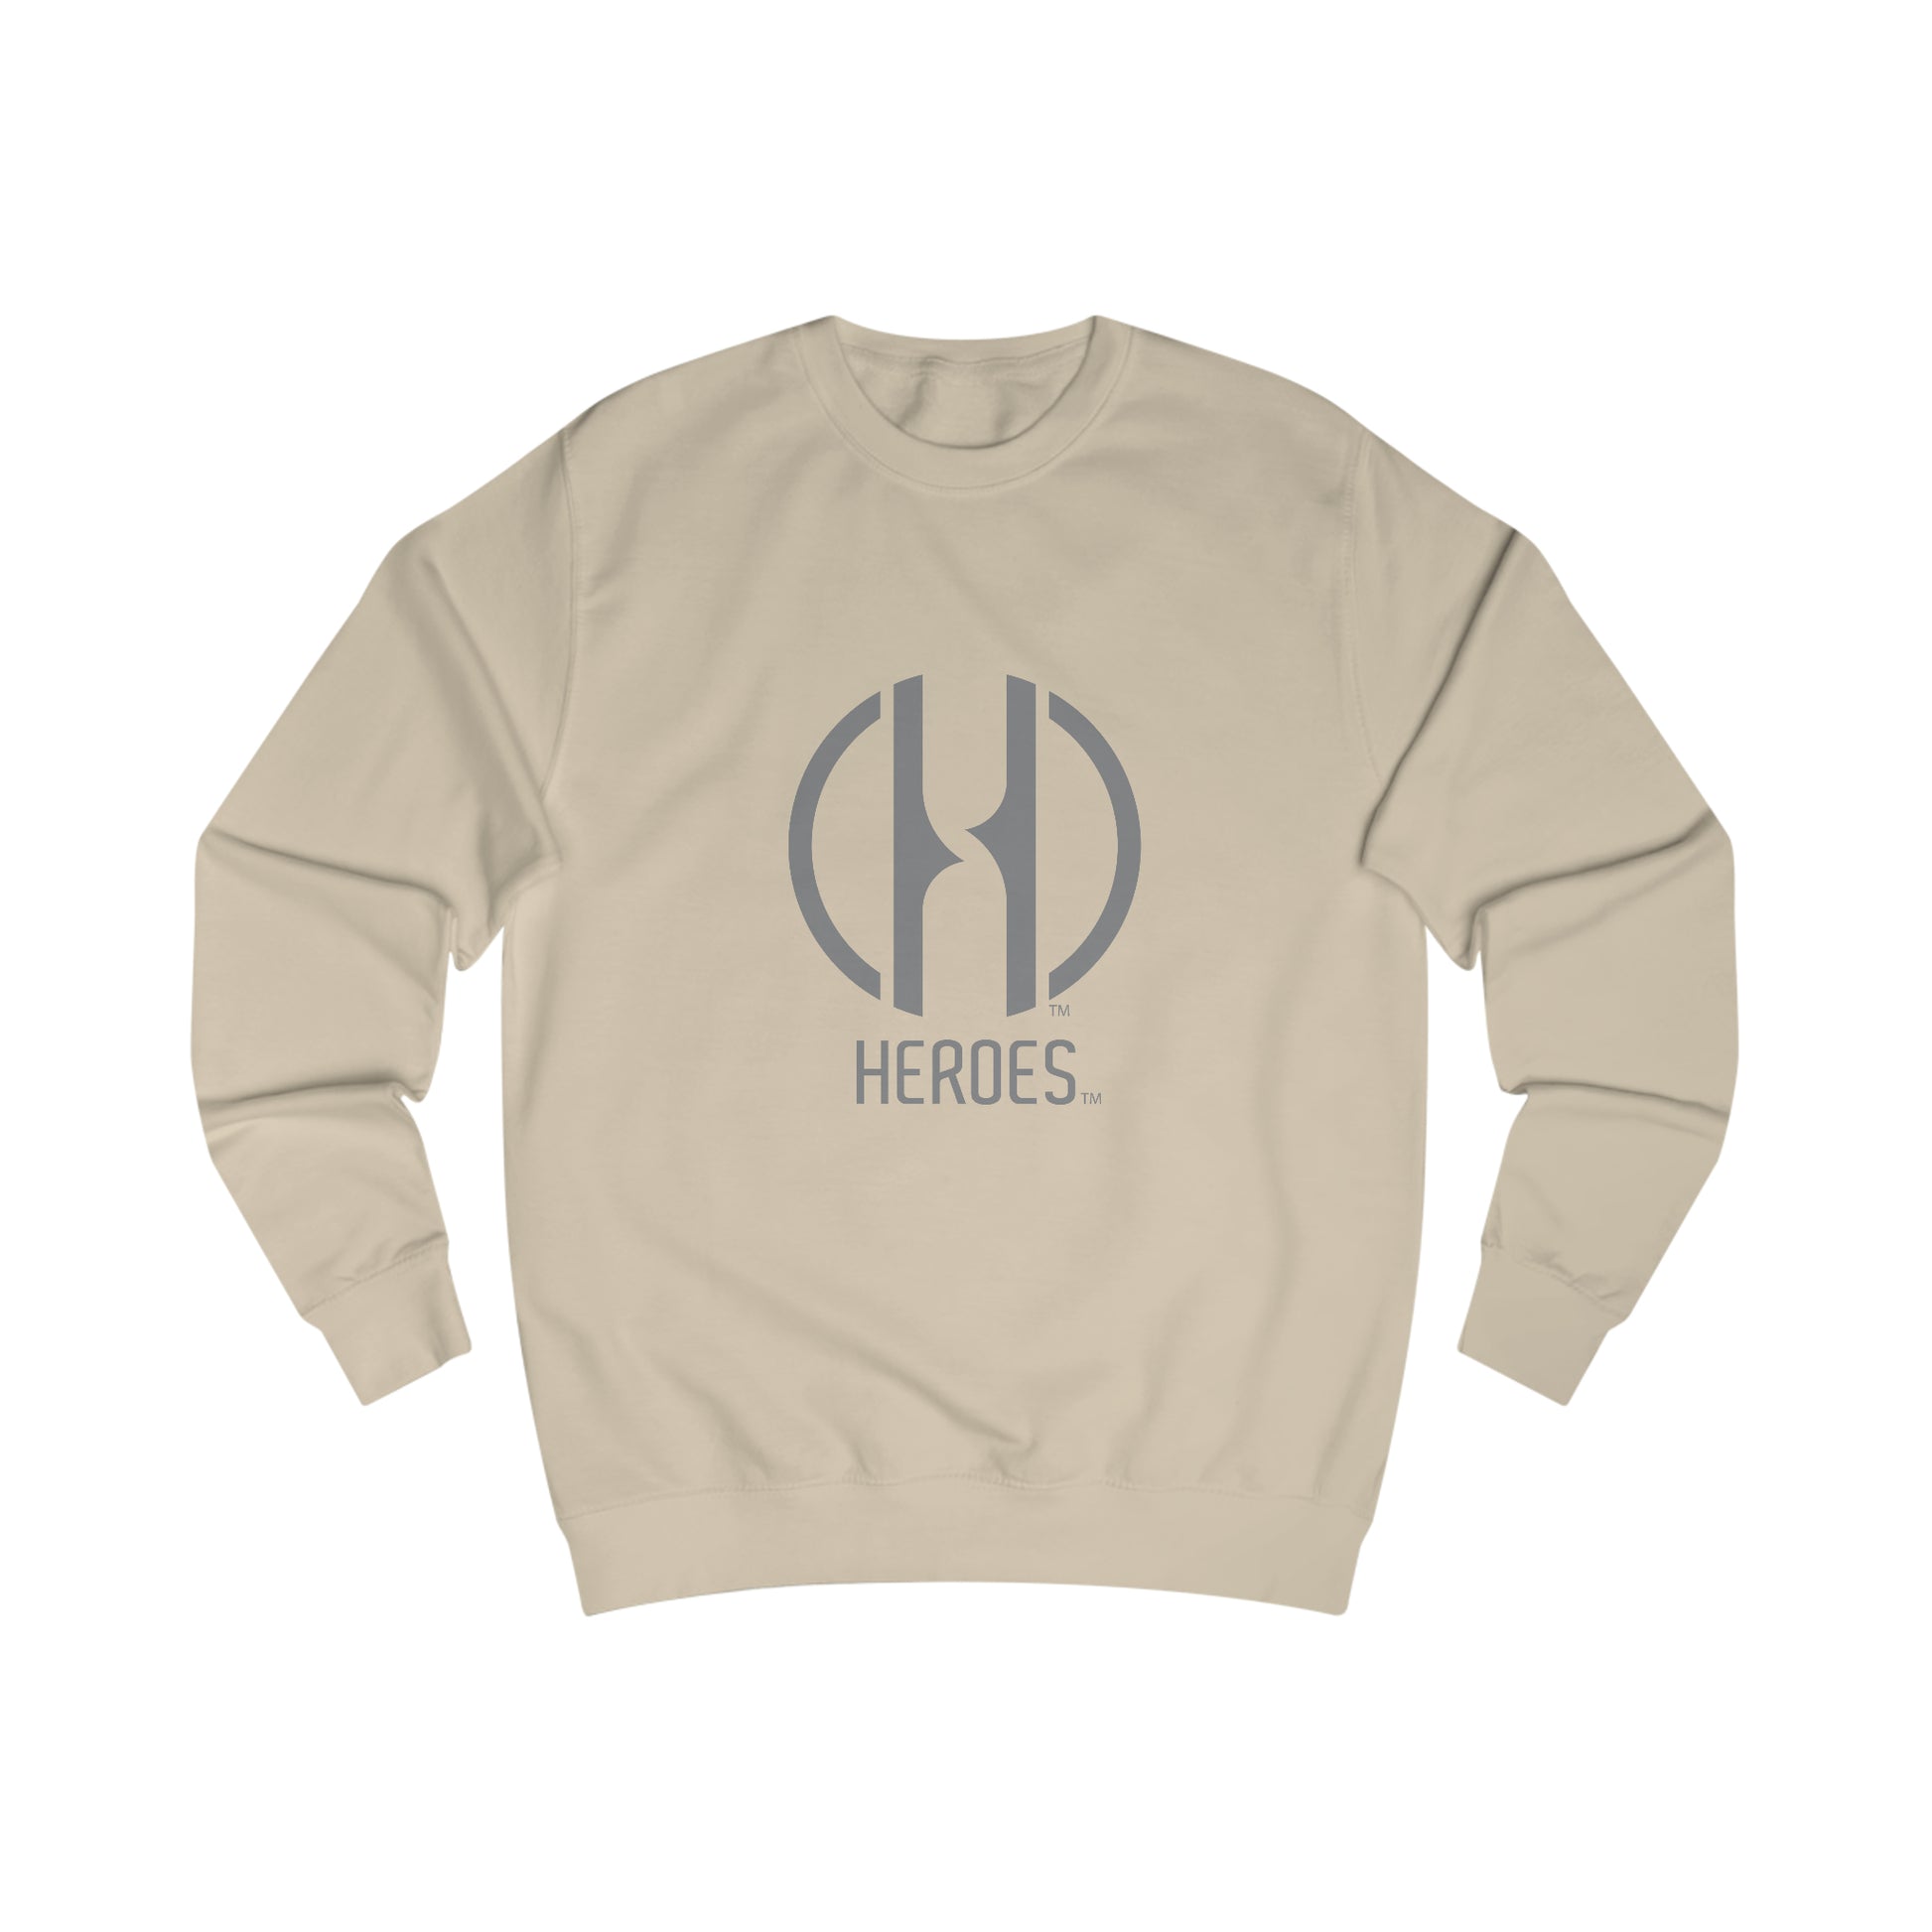 HEROES Men's Sweatshirt - Making It Happen Foundation Inc.